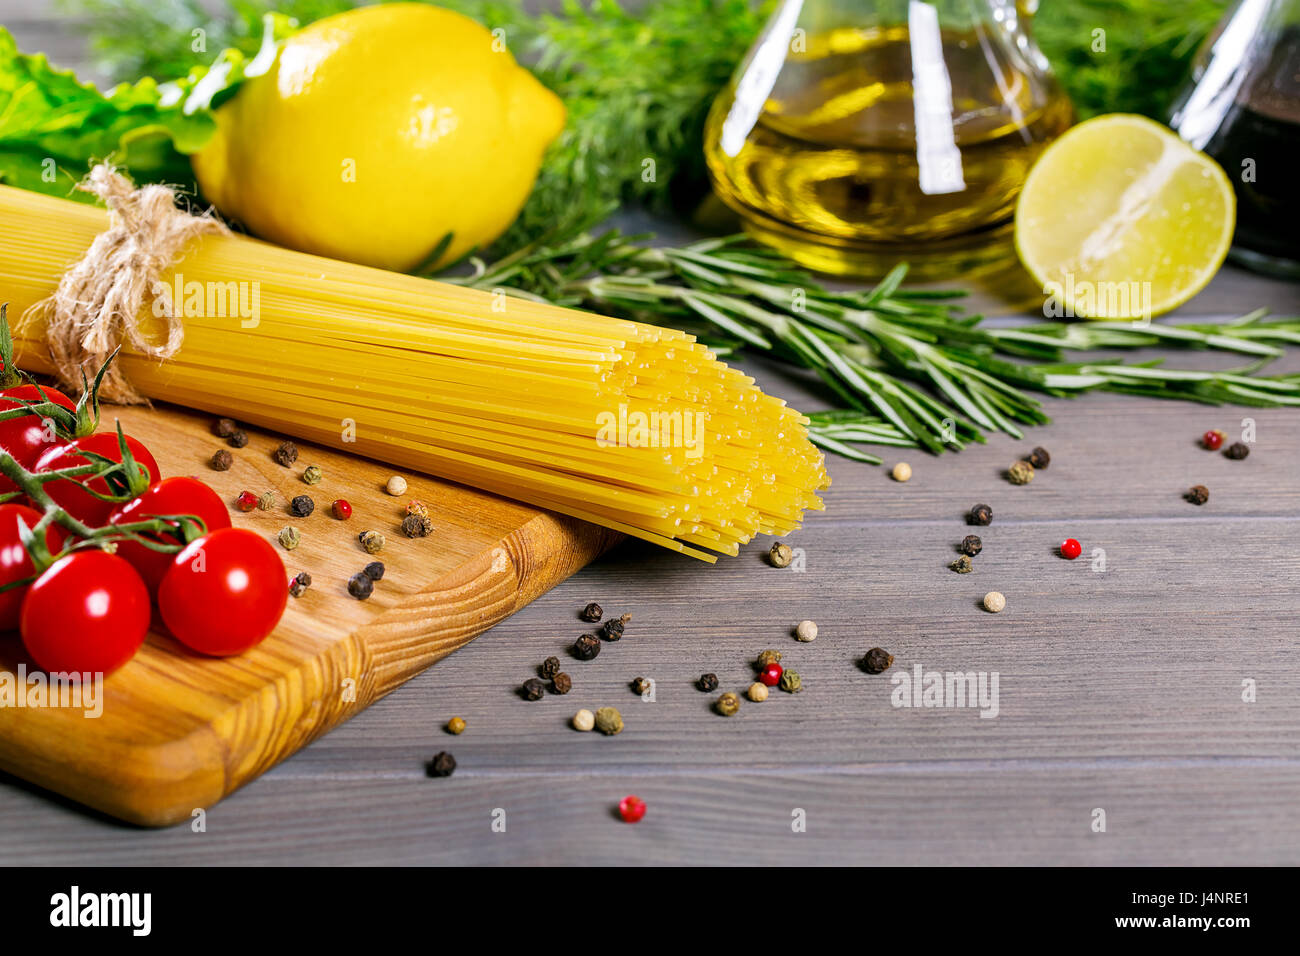 Spaghetti, tomates cerise, huile d'olive, d'herbes et épices sur le vieux fond de bois gris. Définir pour des aliments sains. Ingrédients pour la salade Banque D'Images